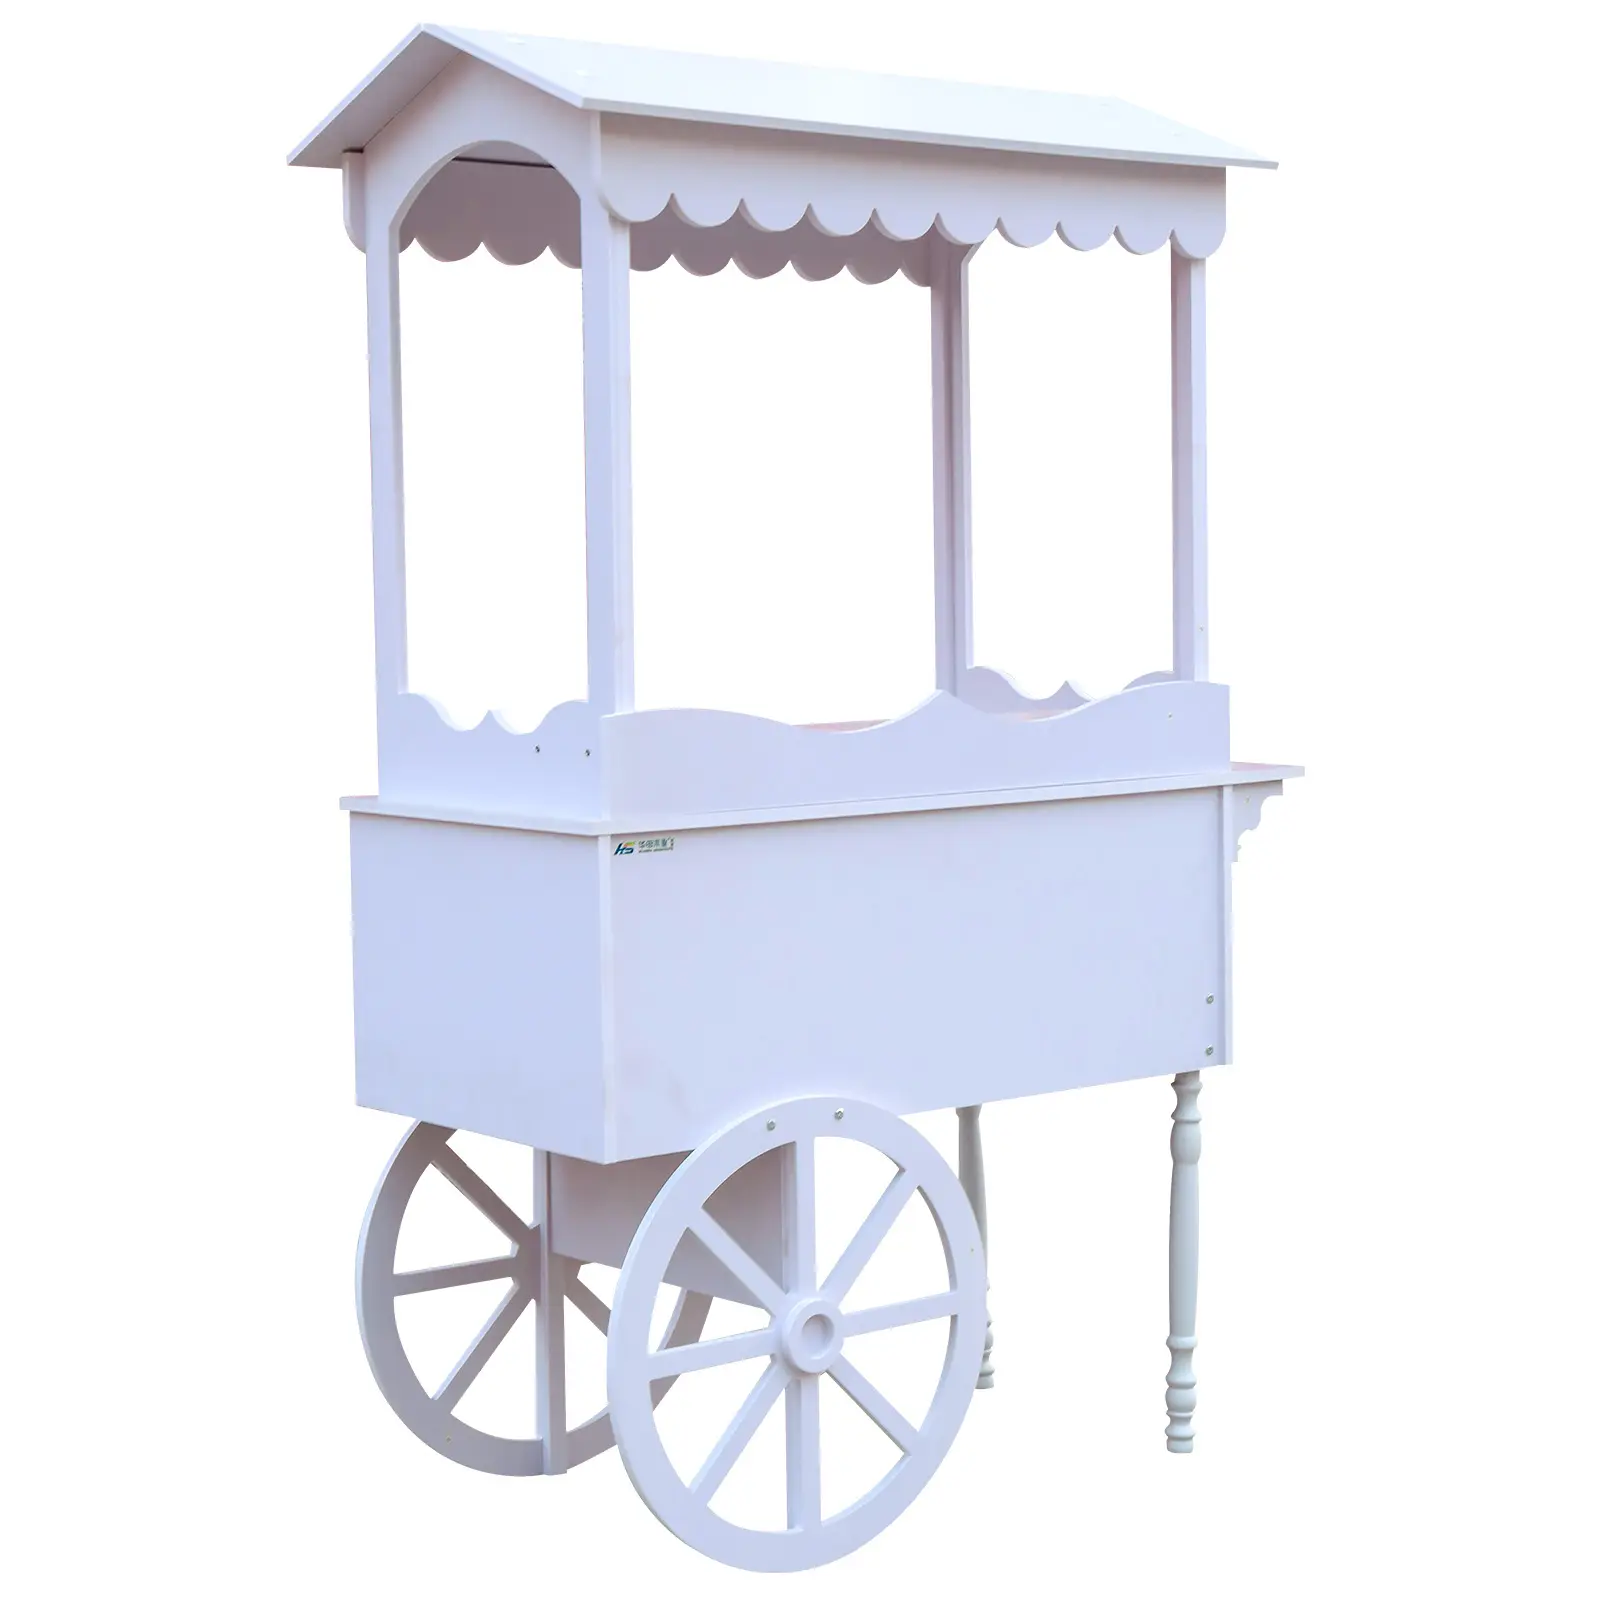 عربة حلوى بتصميم مخصص مصنوعة من الخشب والبلاستيك مزودة بعجلات تصلح كزينة لحفلات الزفاف وعيد الميلاد